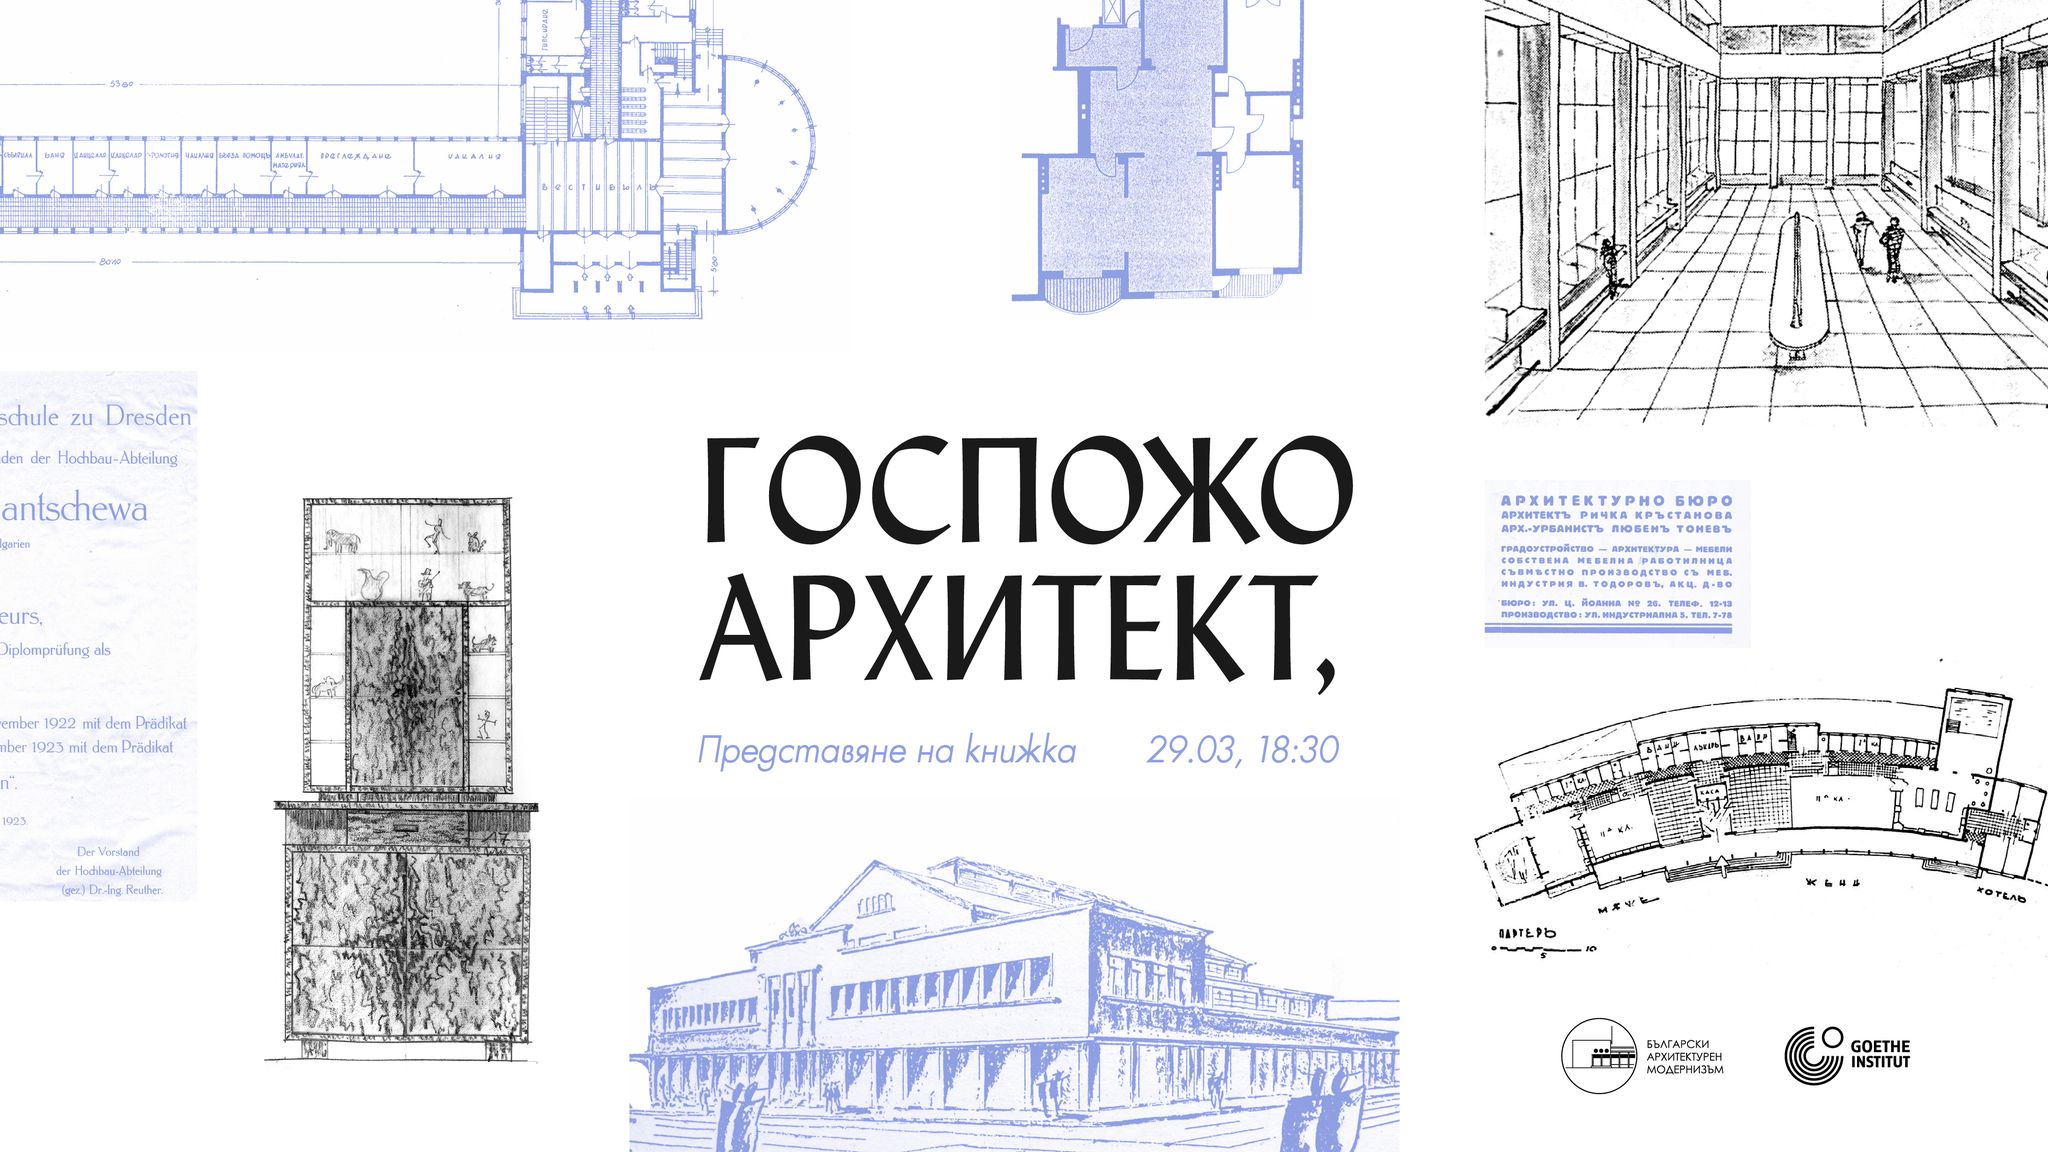 Български архитектурен модернизъм представят книжката “Госпожо архитект”